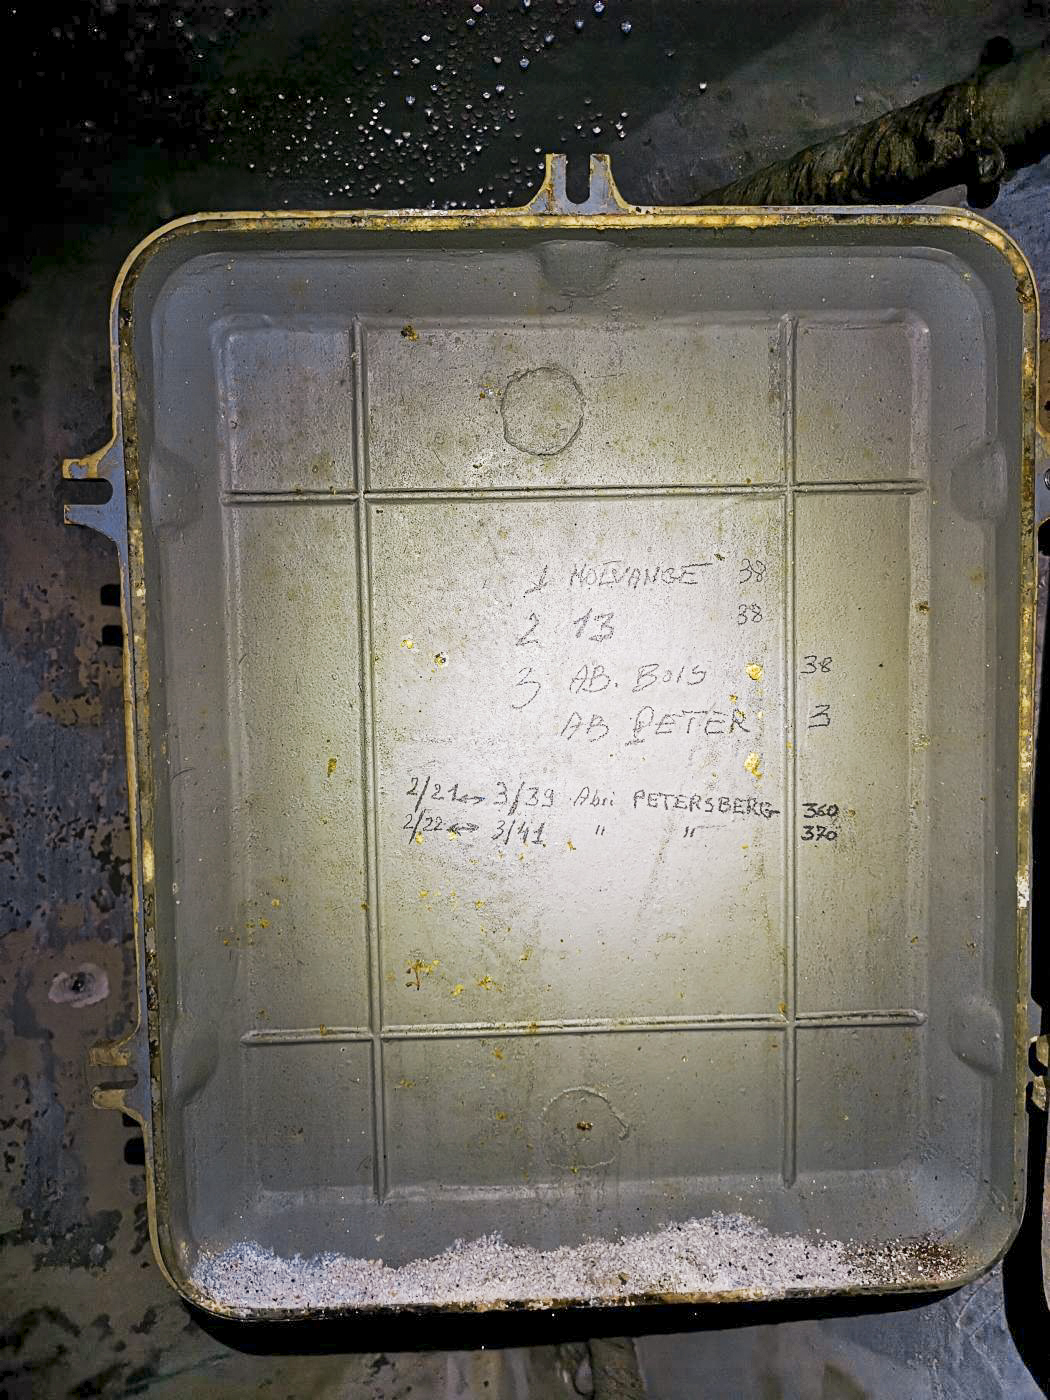 Ligne Maginot - 36T - (Chambre de coupure) - Indications à l'intérieur du boîtier, renseignant le nombre de connexions vers les éléments fortifiés les plus proches 